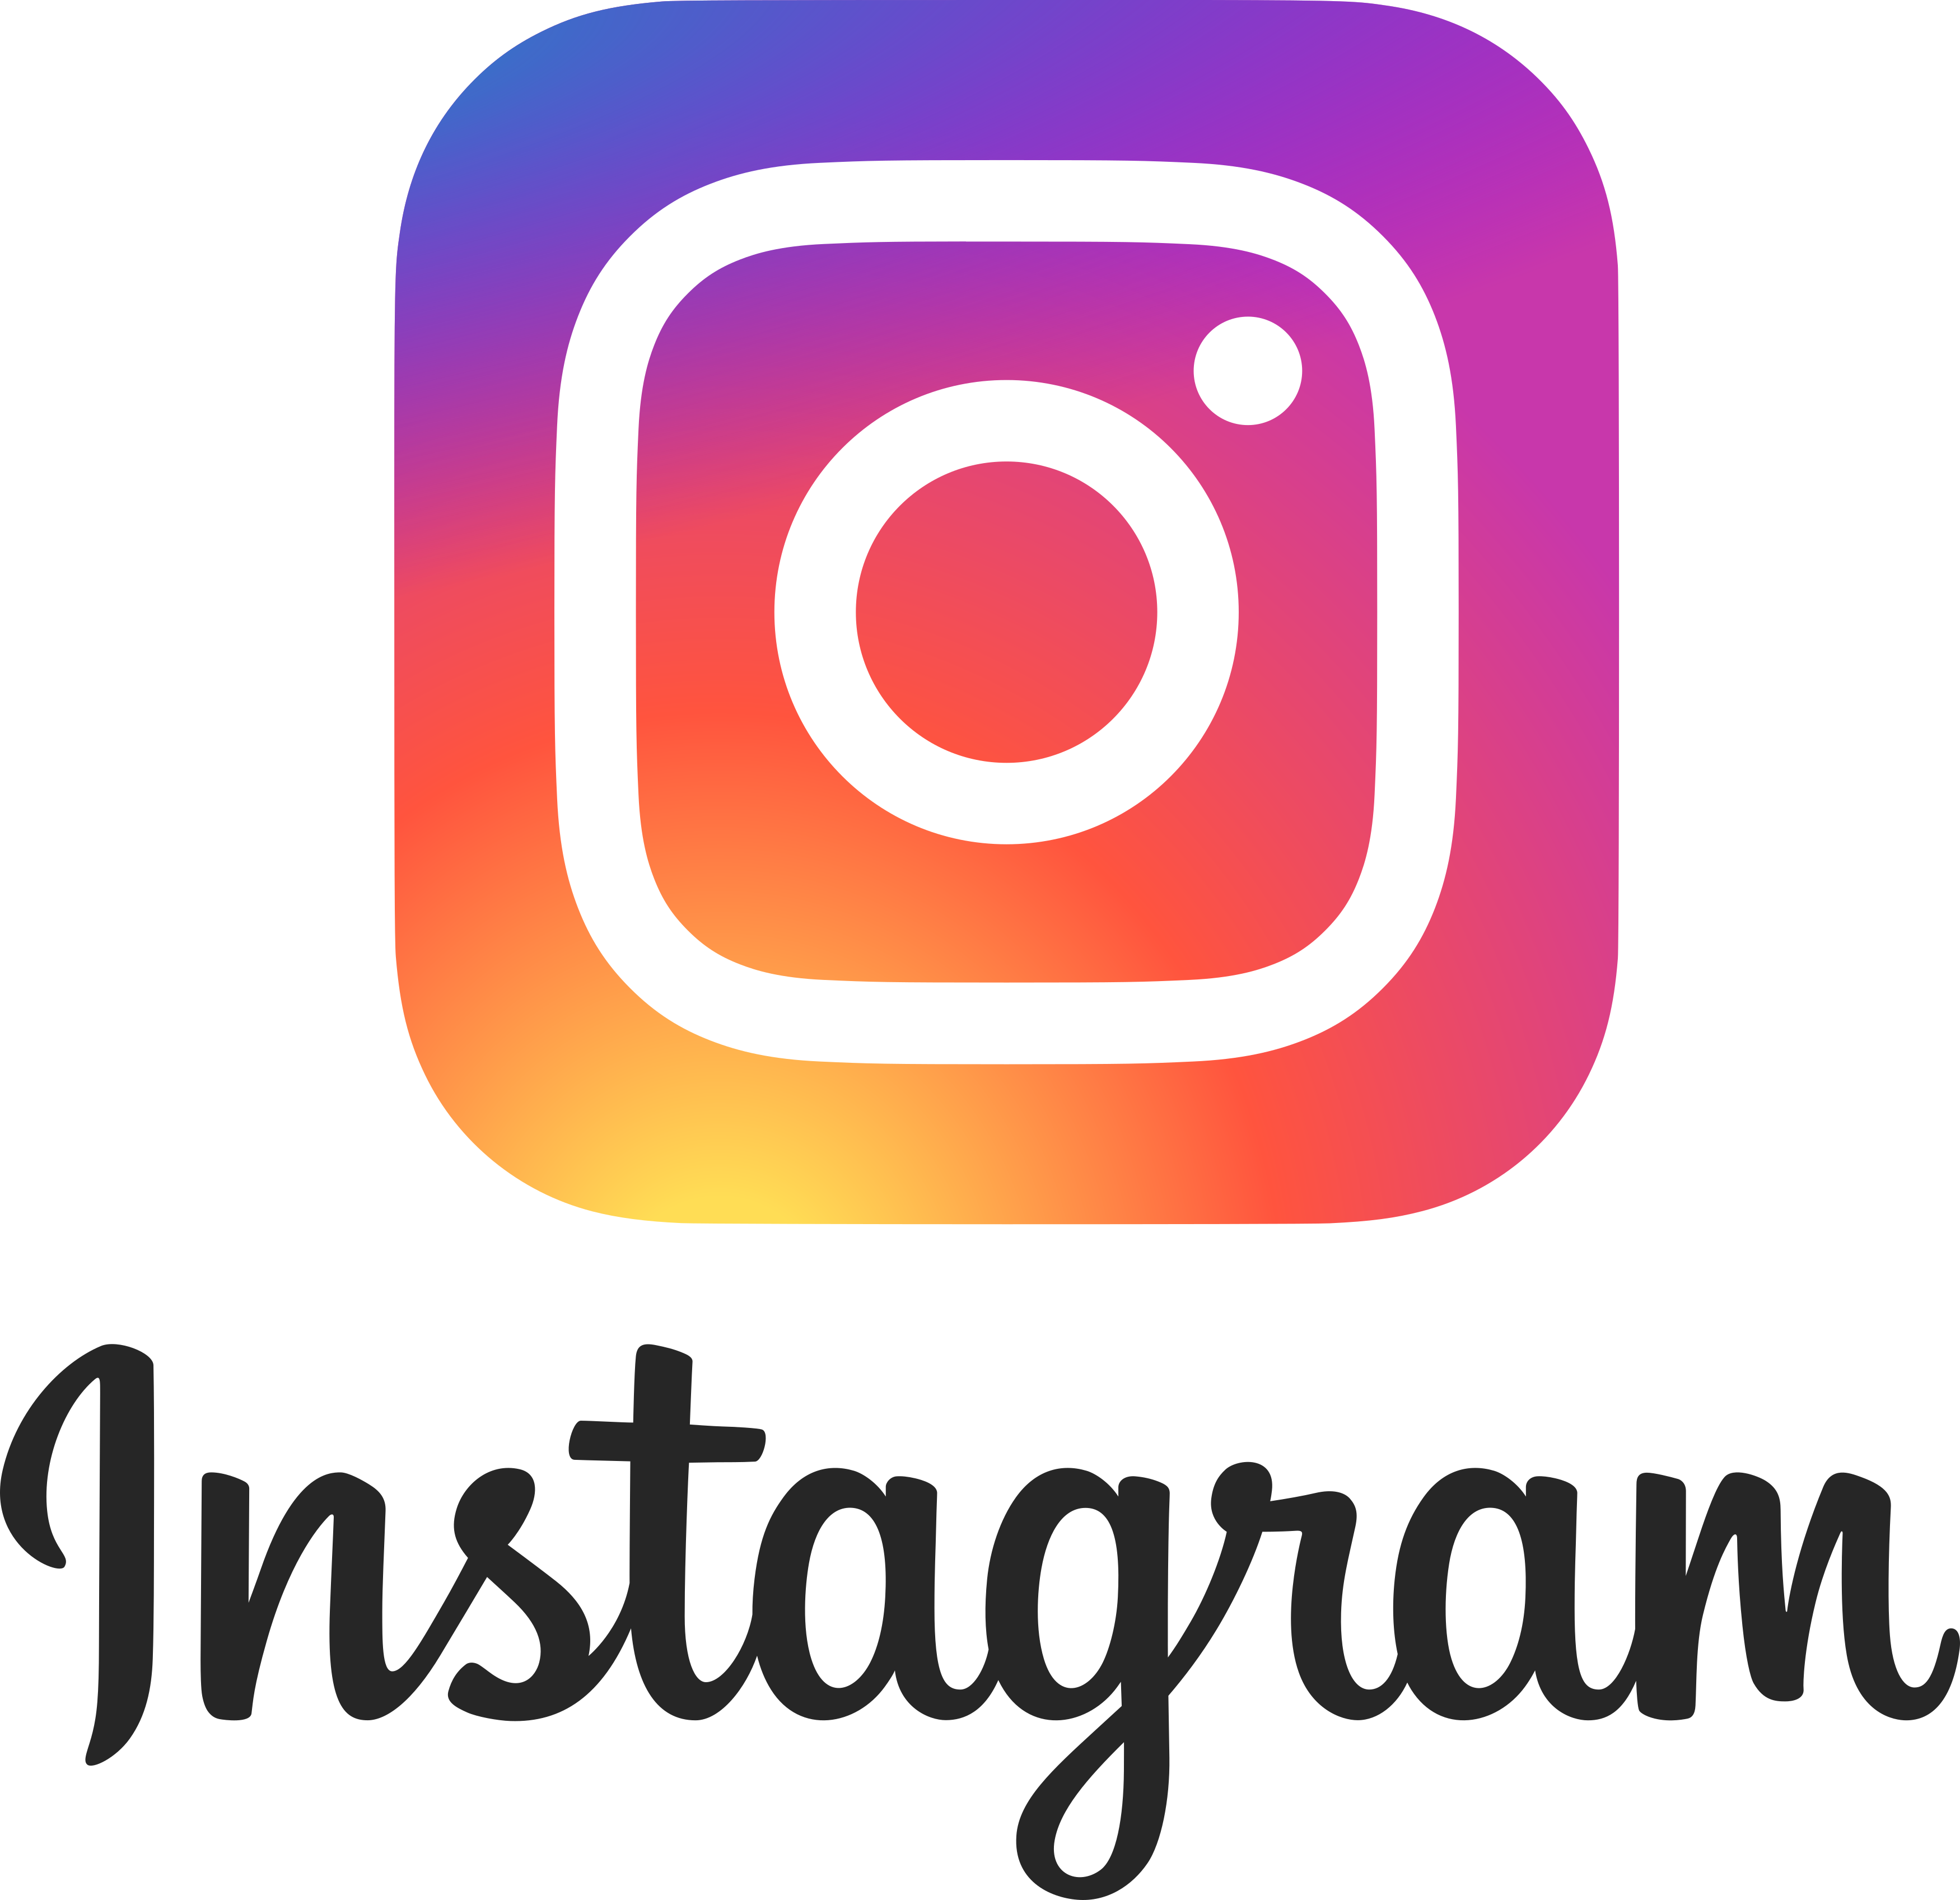 Instagram Logo 2.png 8 De Abril De 2017 927 Kb 3500 × - Instagram, Transparent background PNG HD thumbnail